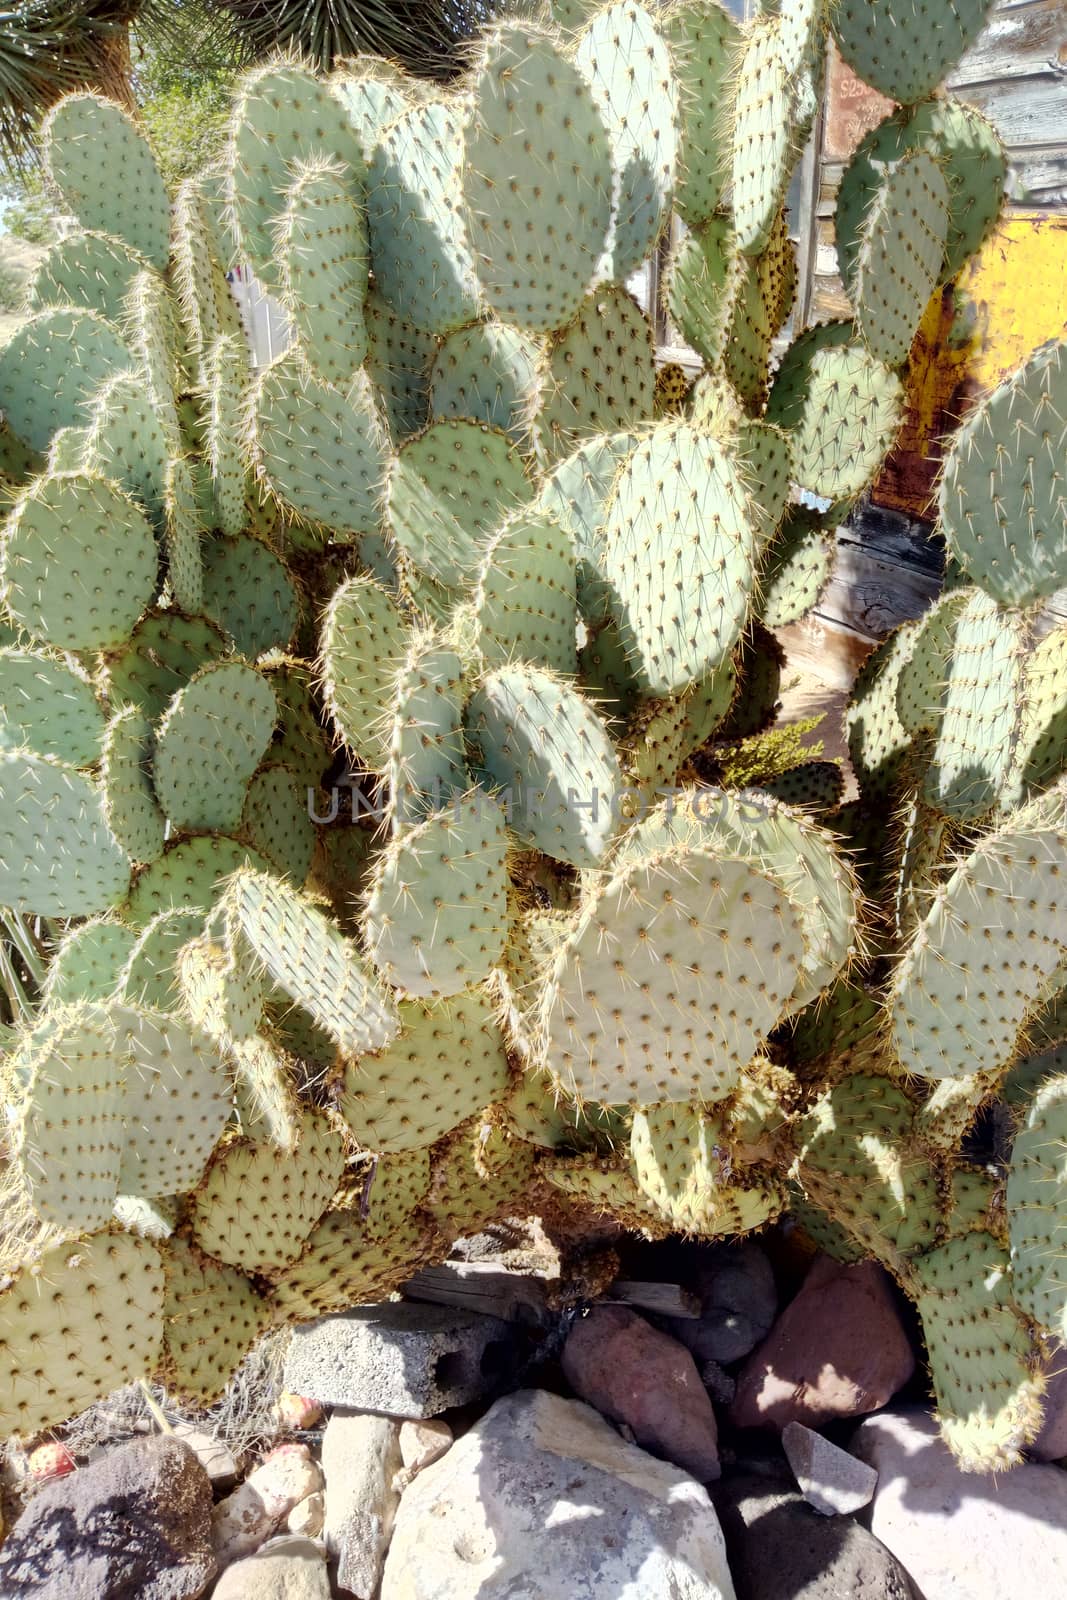 Cactus texture background. Cactus in the desert